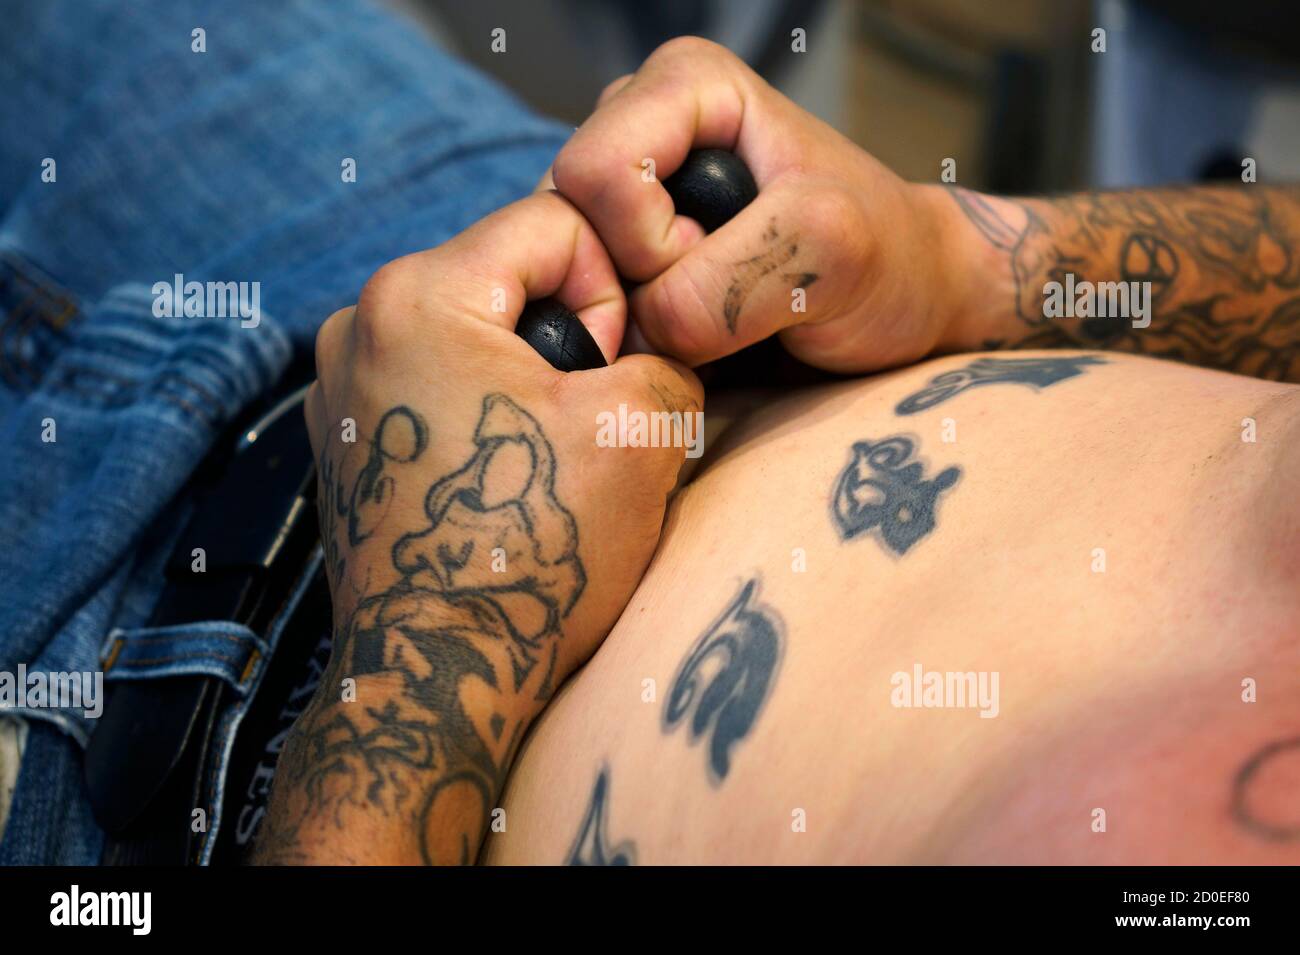 COLORADO SPRINGS TATTOO REMOVAL  Tattoo Removal Colorado Springs